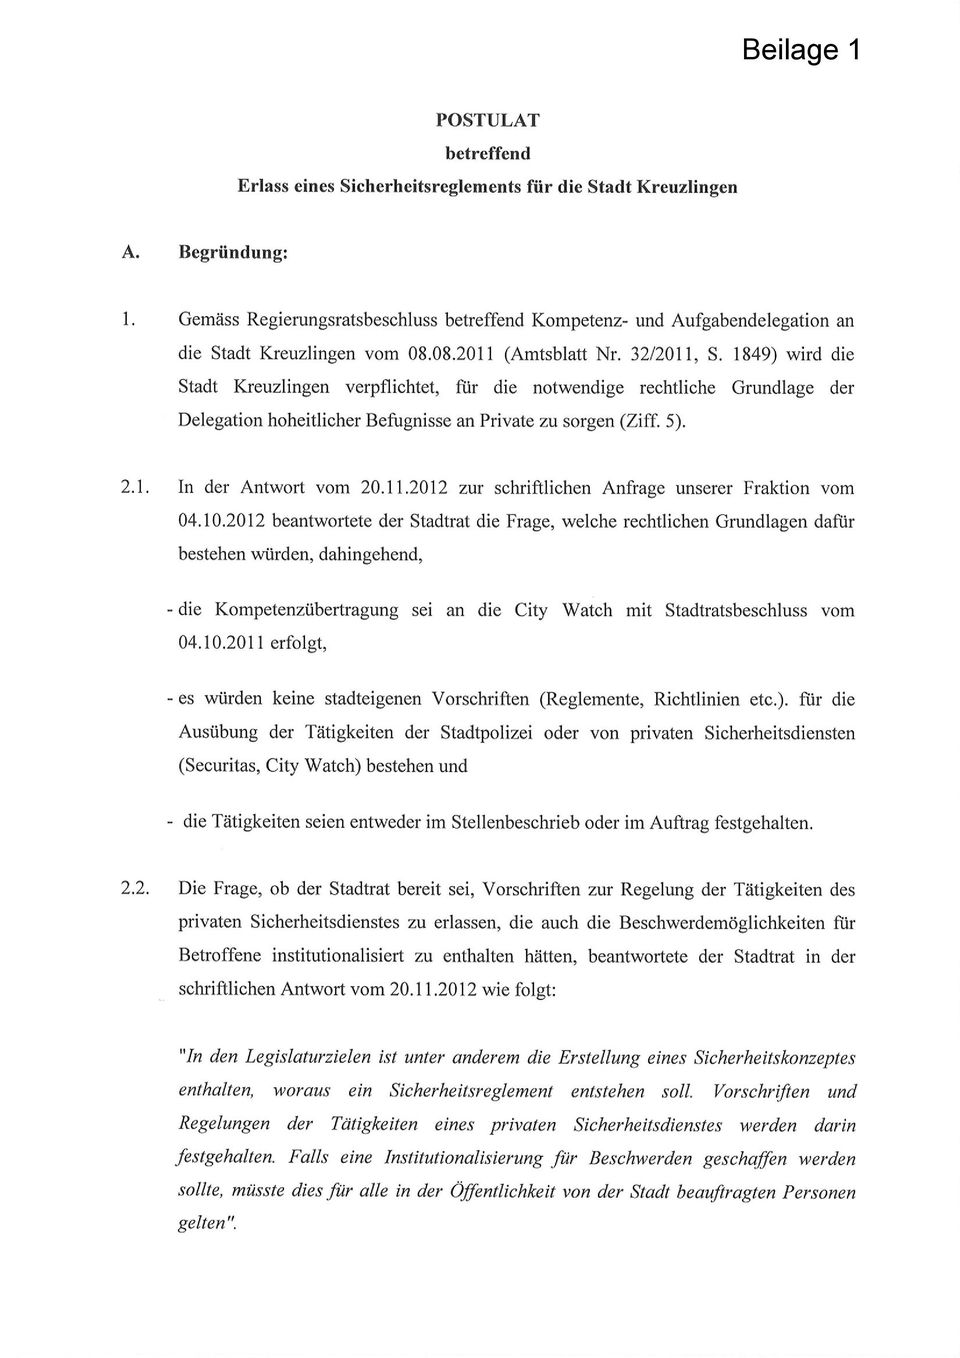 1849) wird die Stadt Kreuzlingen verpflichtet, für die notwendige rechtliche Grundlage der Delegation hoheitlicher Befugnisse an Private zu sorgen (Ziff.5). 2.1 In der Antwort vom 20.11.